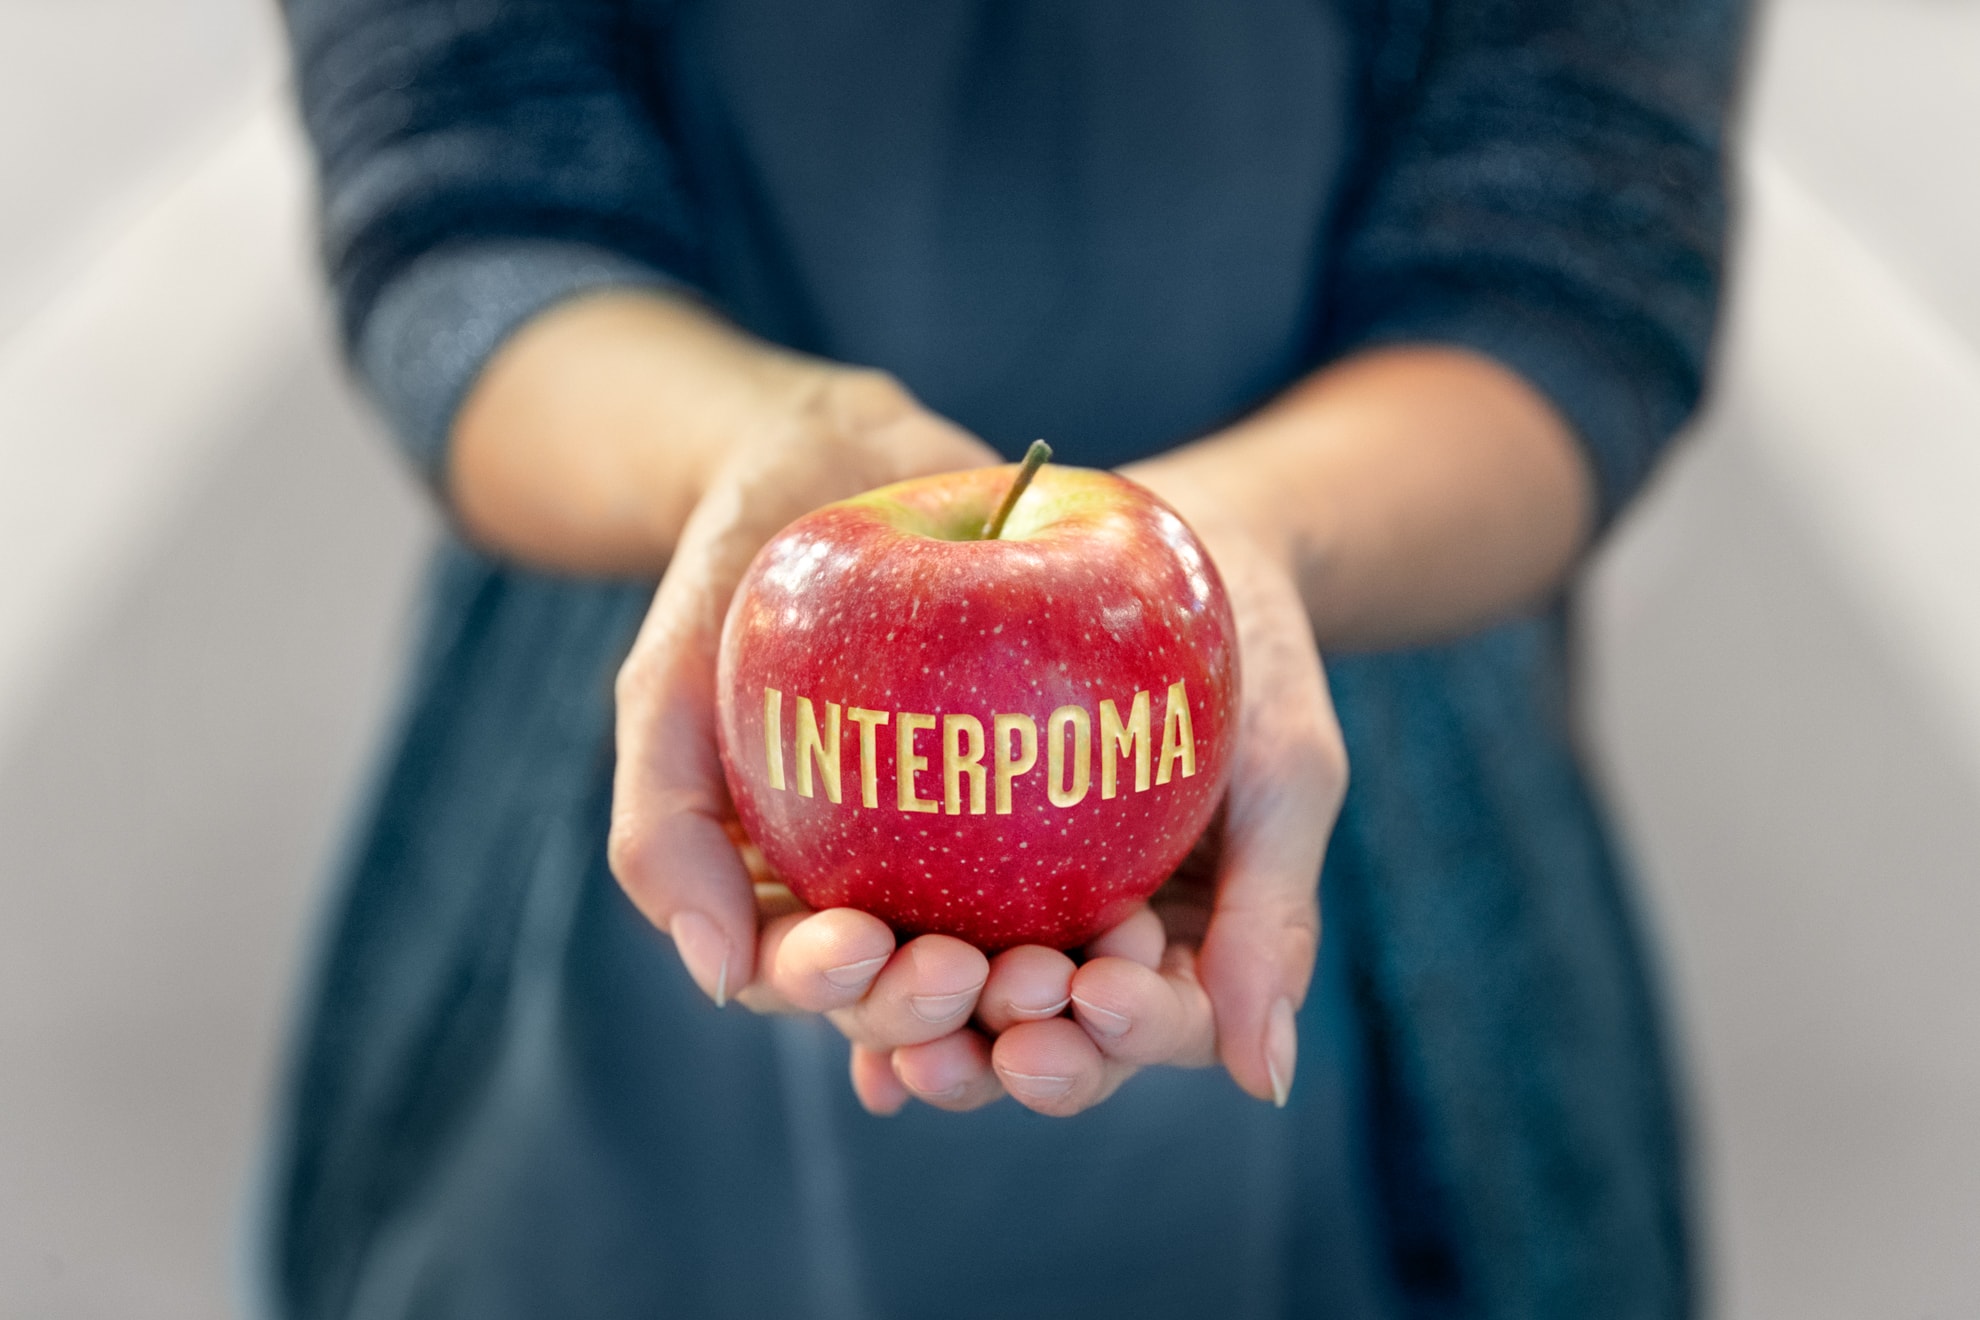 Interpoma 2018, everything revolves around apples in Bolzano